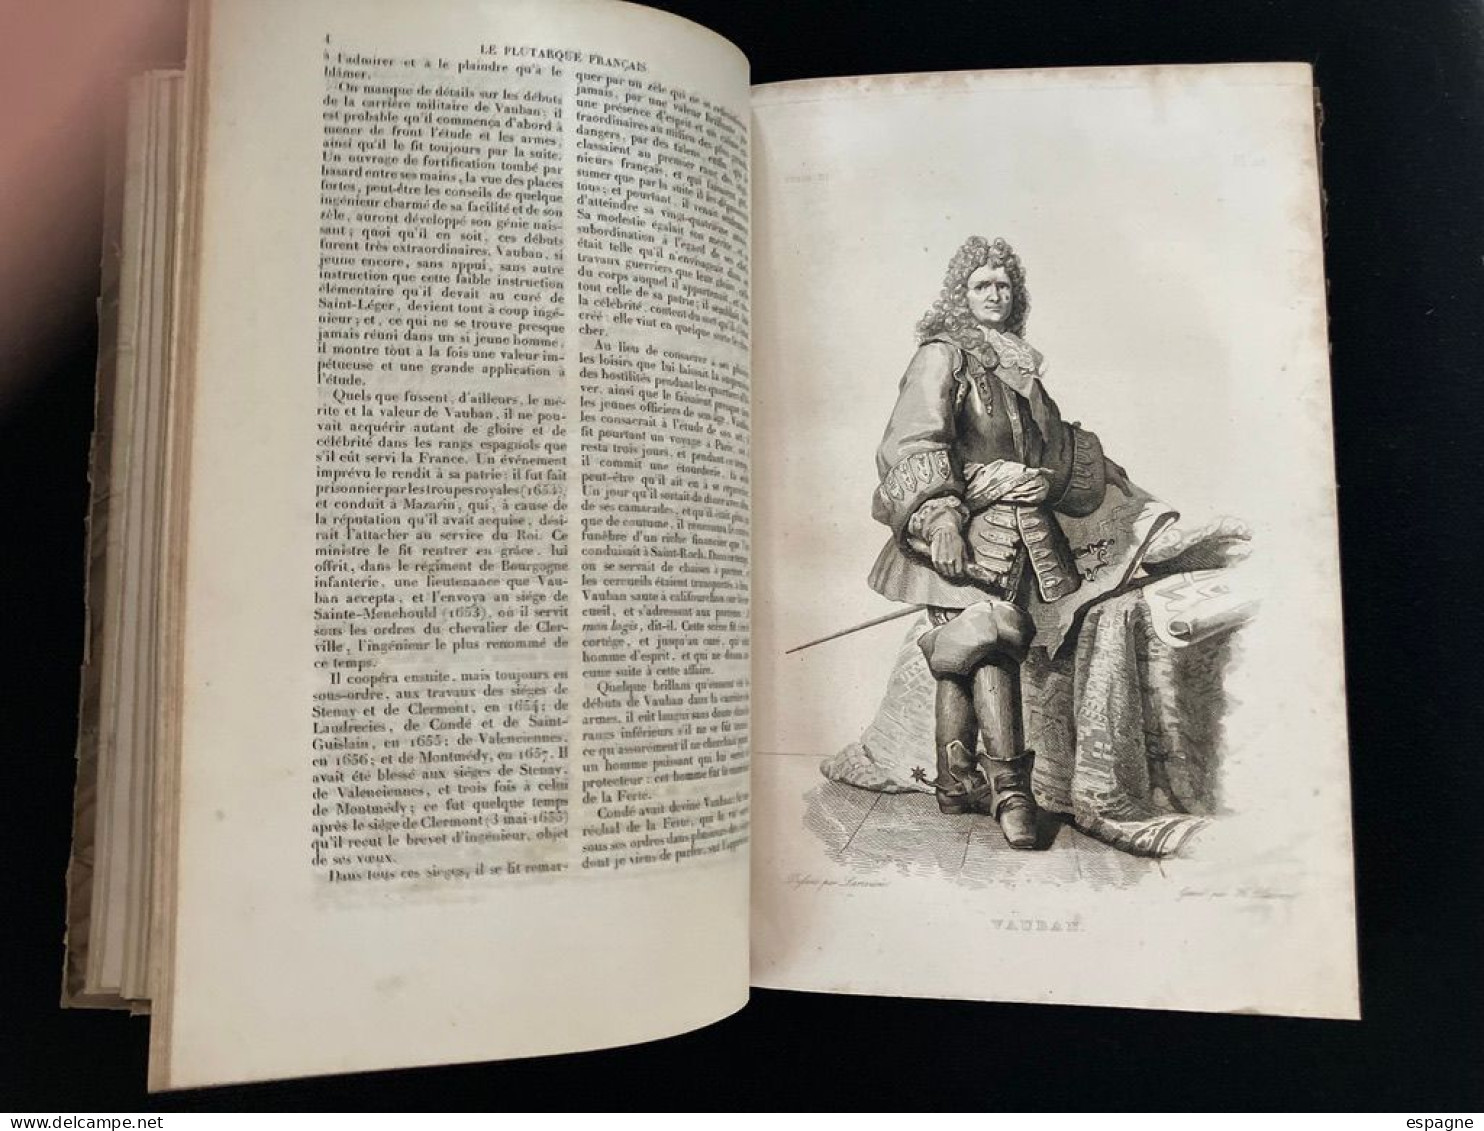 Plutarque français ensemble de biographies de personnages illustres avec illustration pour chacun  1836